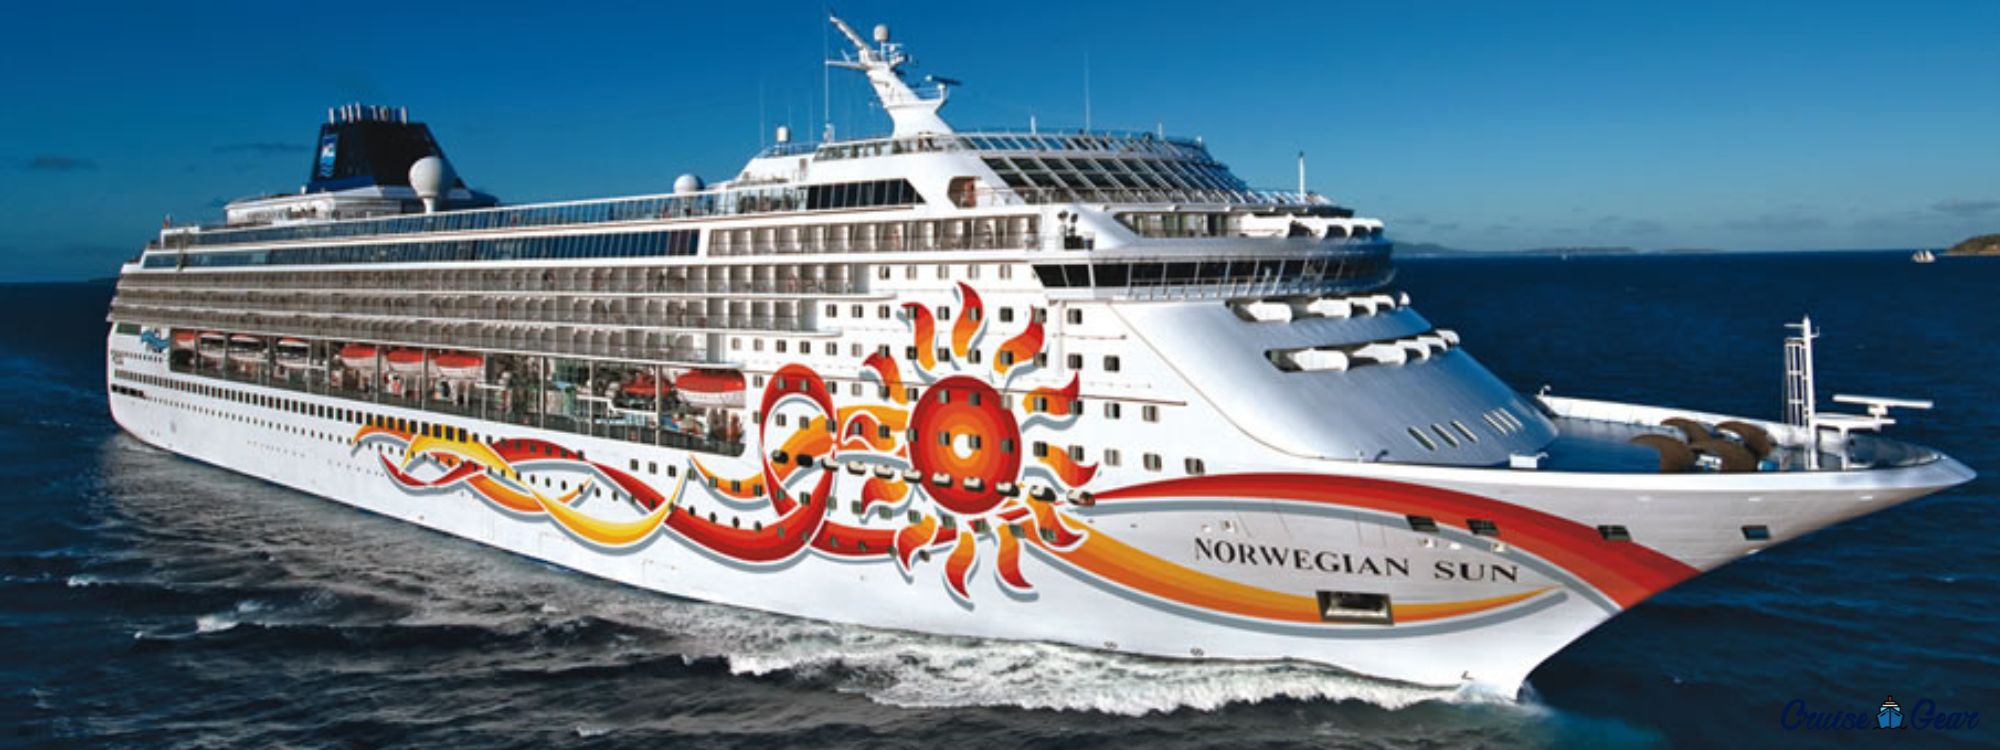 ncl cruise ship sun